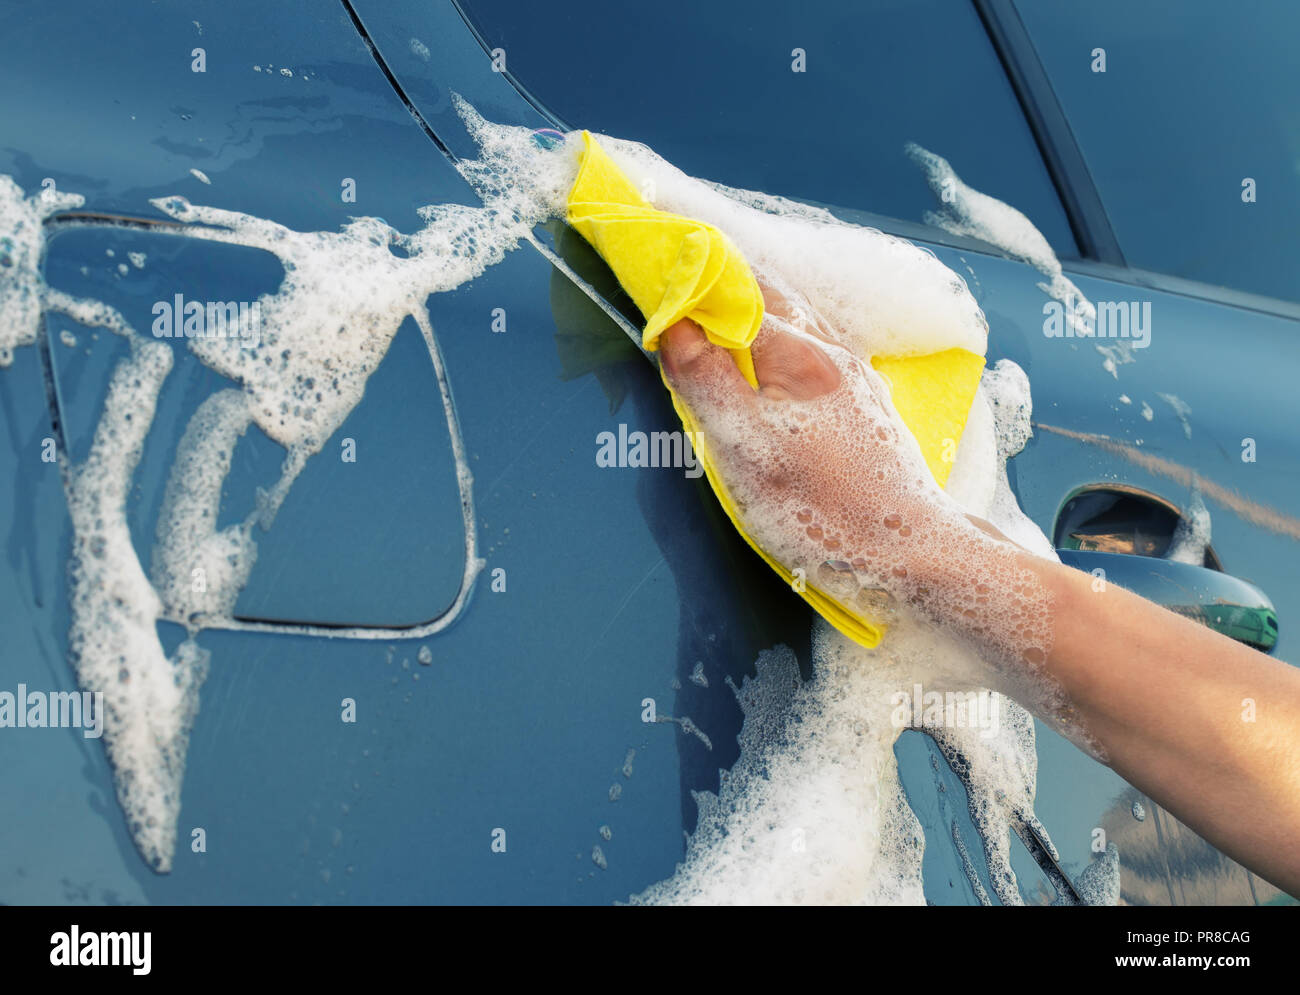 Laver la voiture grise avec un chiffon jaune en mousse savonneuse. A woman's hand wipes le côté de la voiture Banque D'Images